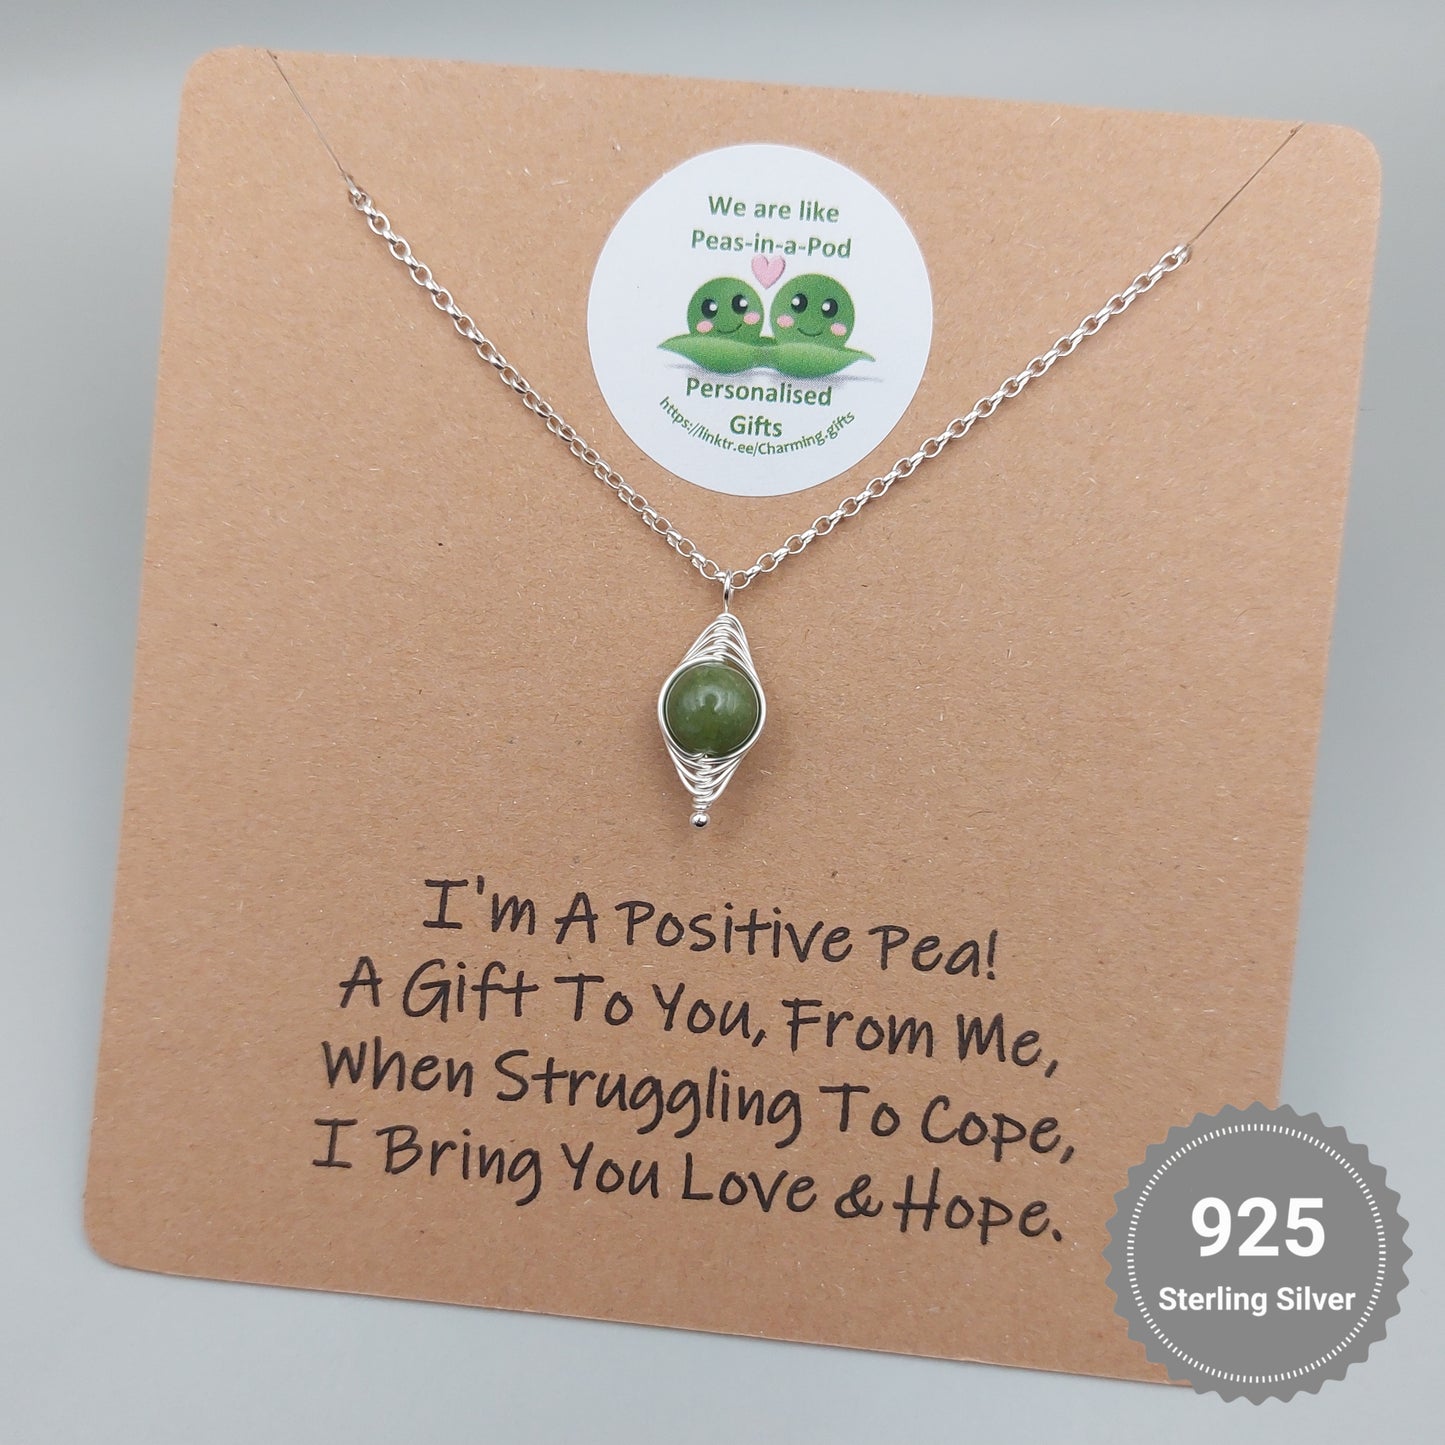 positive pea necklace